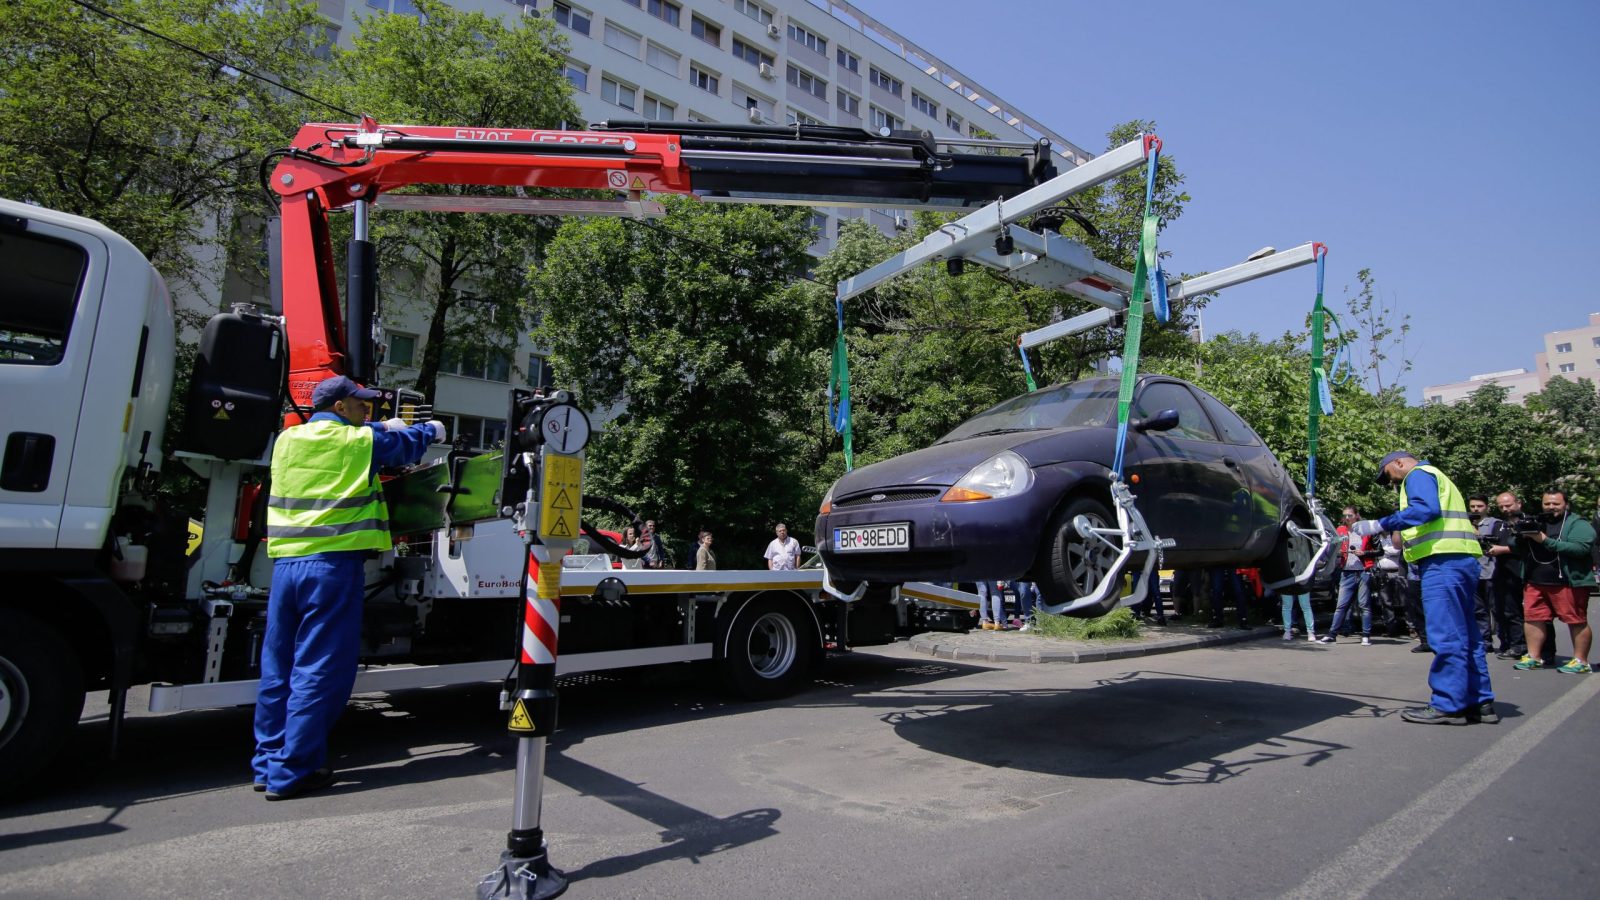 Primarul Robert Negoiţă participă la o acţiune de ridicare a vehiculelor staţionate neregulamentar, în sectorul 3 din București, joi 3 mai 2018. Inquam Photos / George Călin